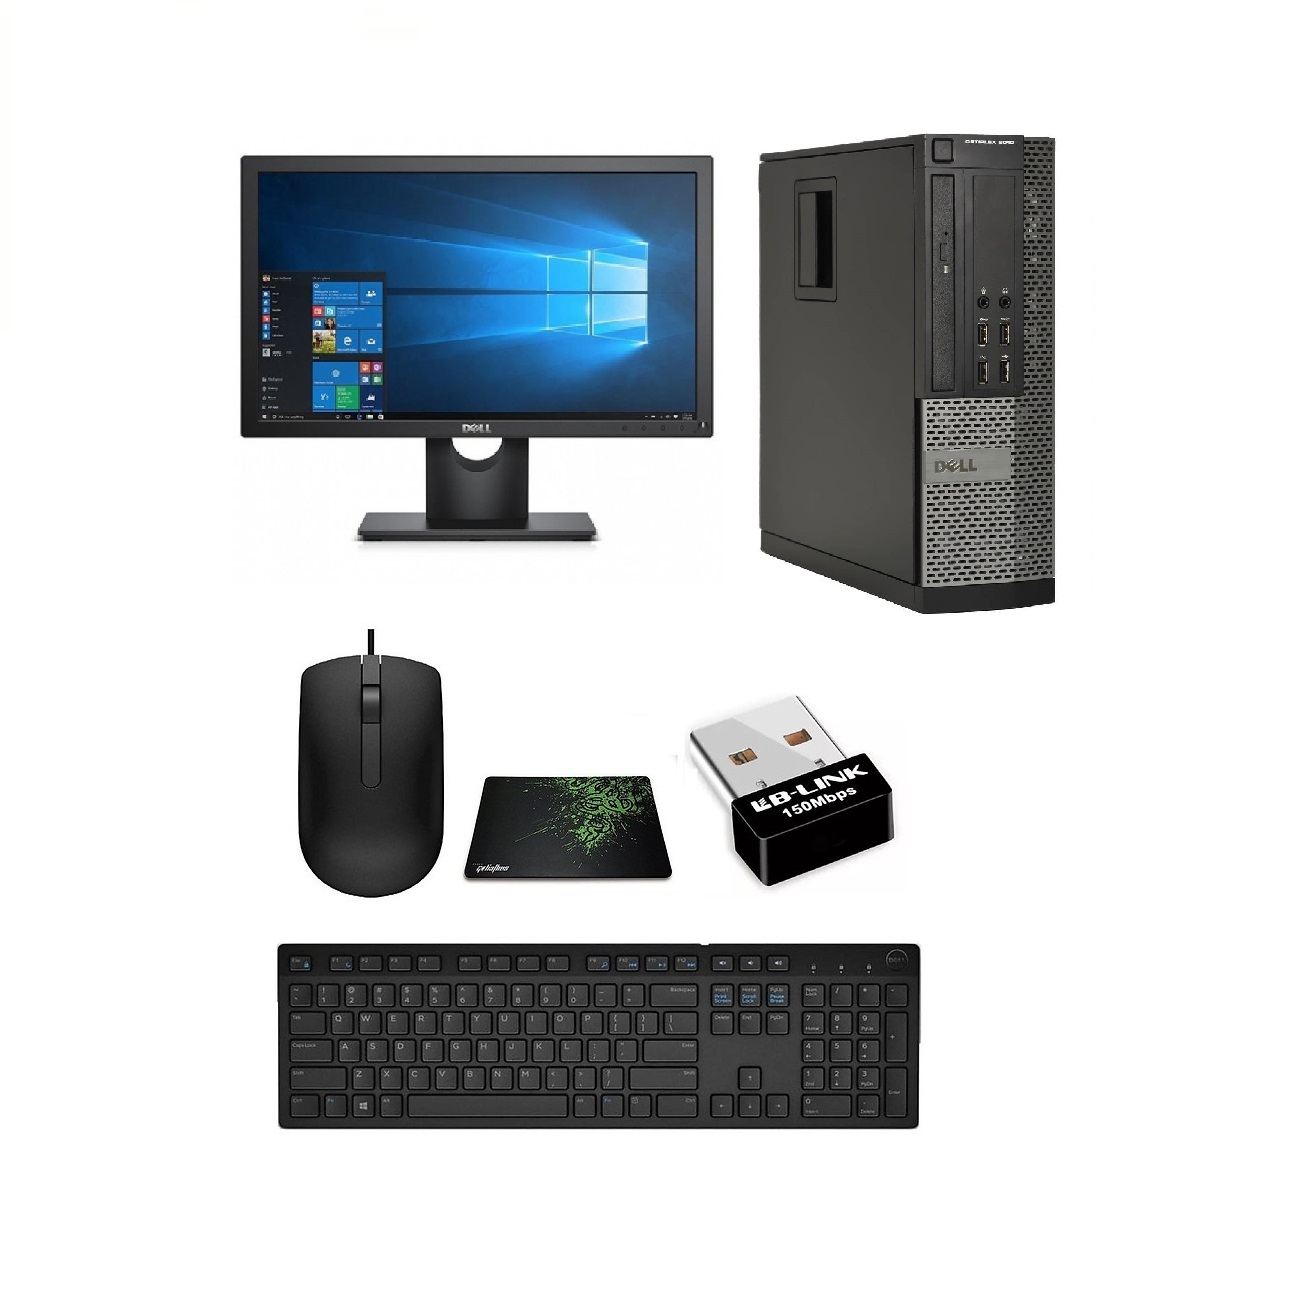 Bộ Máy Tính Để Bàn Dell Optiplex  ( Corei5 -2400 / 8gb /SSD 120GB ) Và Màn Hình Dell 18.5 Inch - Tặng Ngay Bàn Phím Chuột + Lót Chuột + USB Wiif. - Hàng Nhập Khẩu